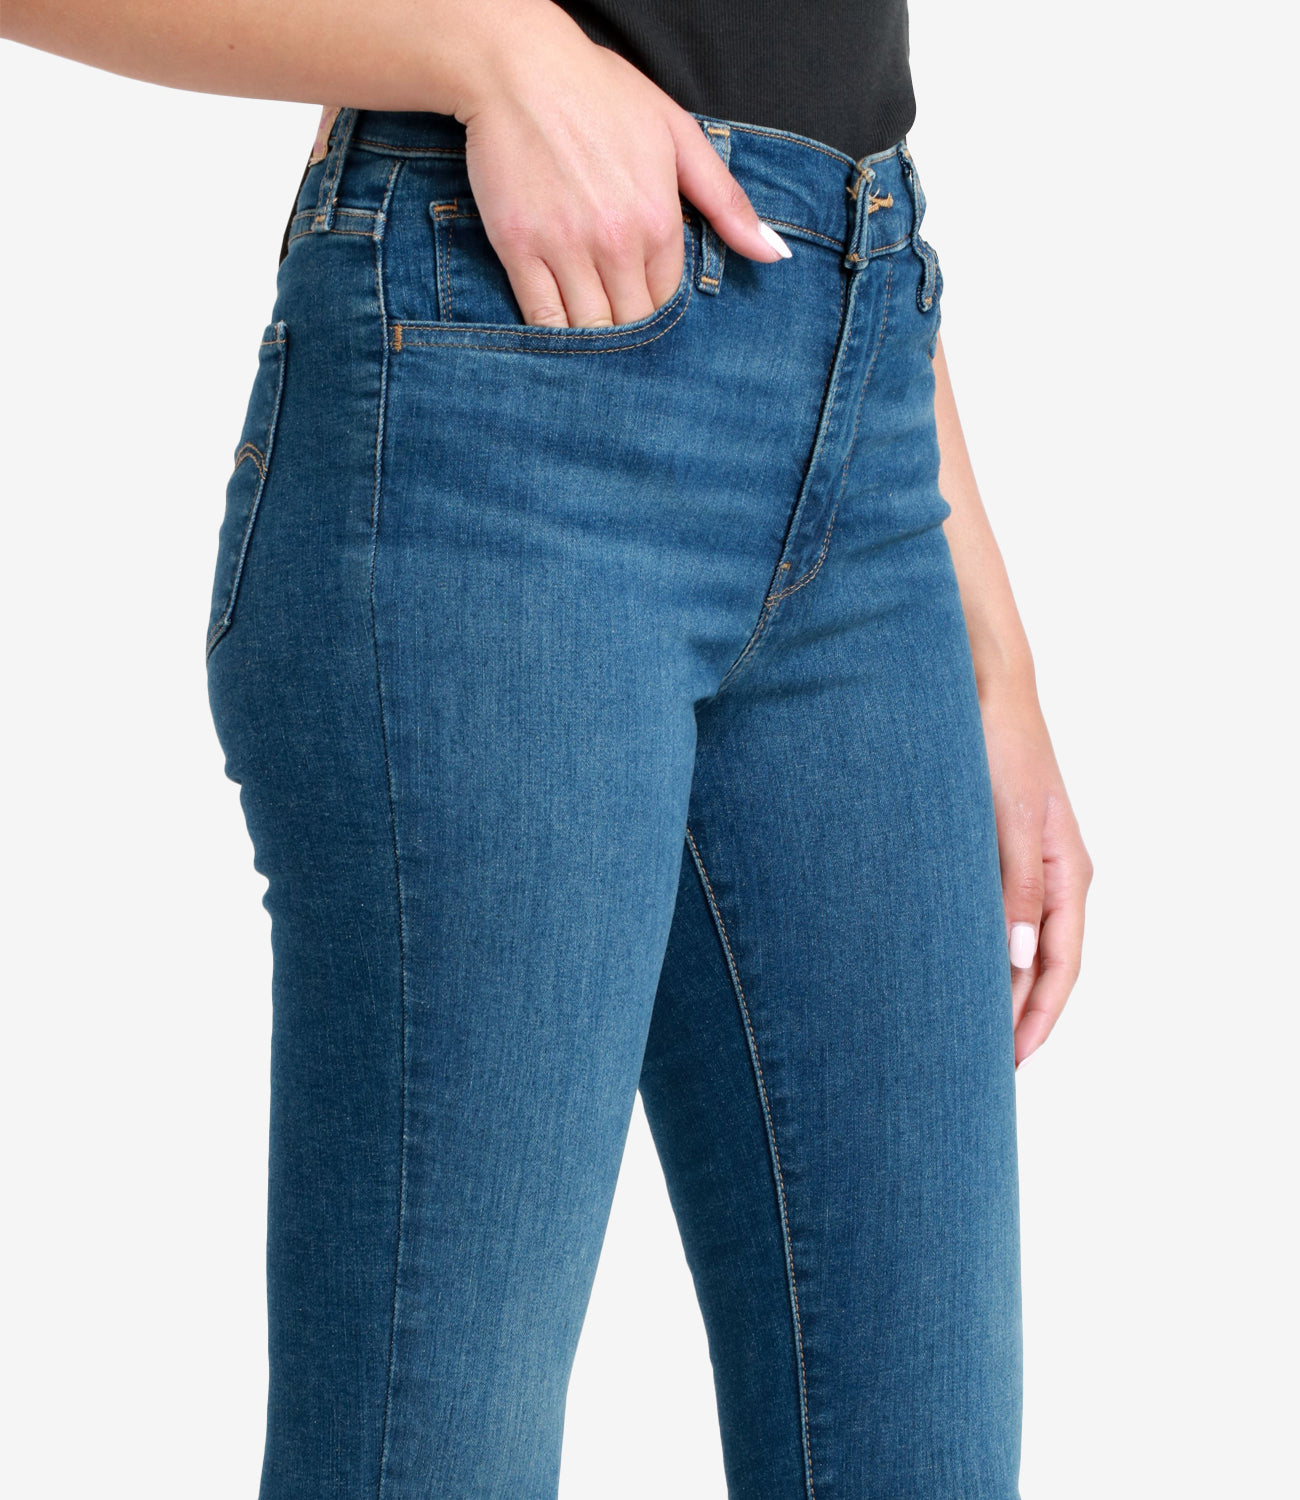 Levis | Jeans 720 Hirise Super Skinny Denim Medium